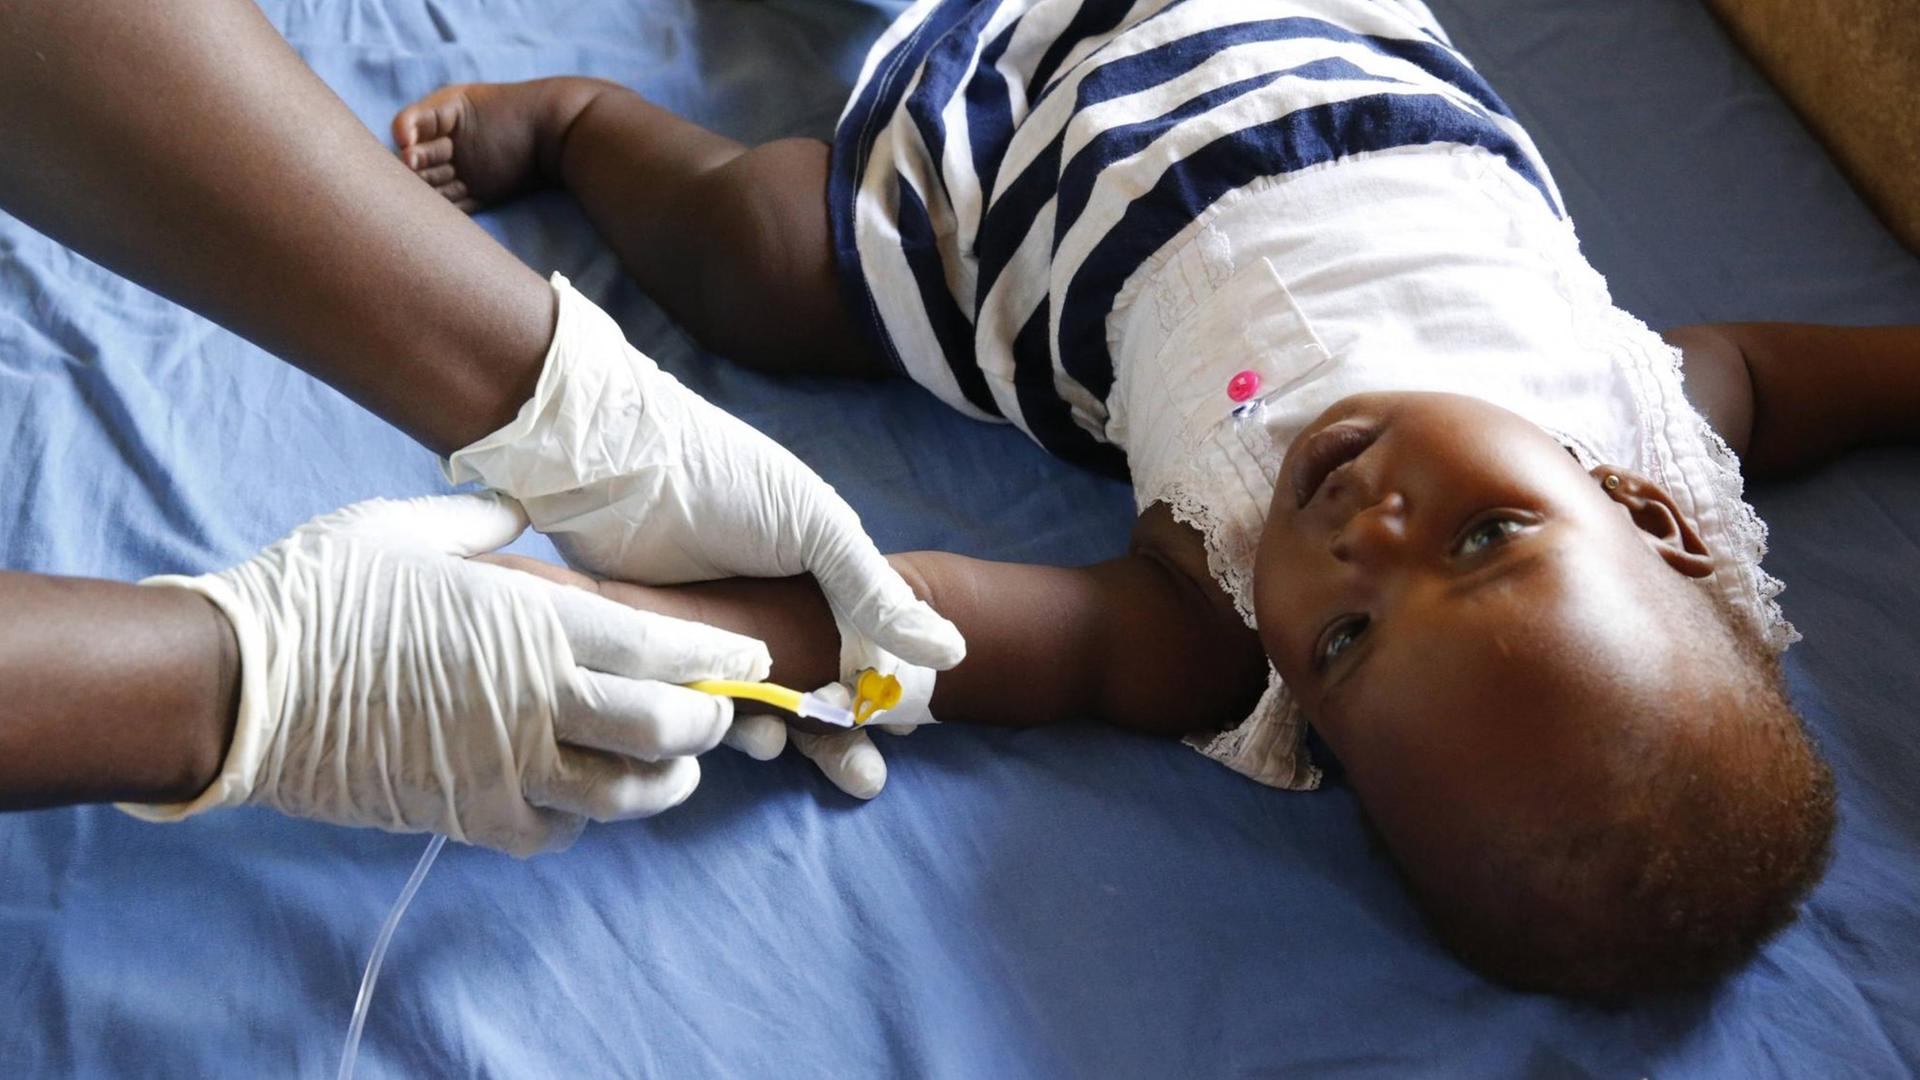 In dem Land Uganda wird ein Kind behandelt, das Malaria hat. Man sieht das Kind, das gerade eine Spritze bekommt.